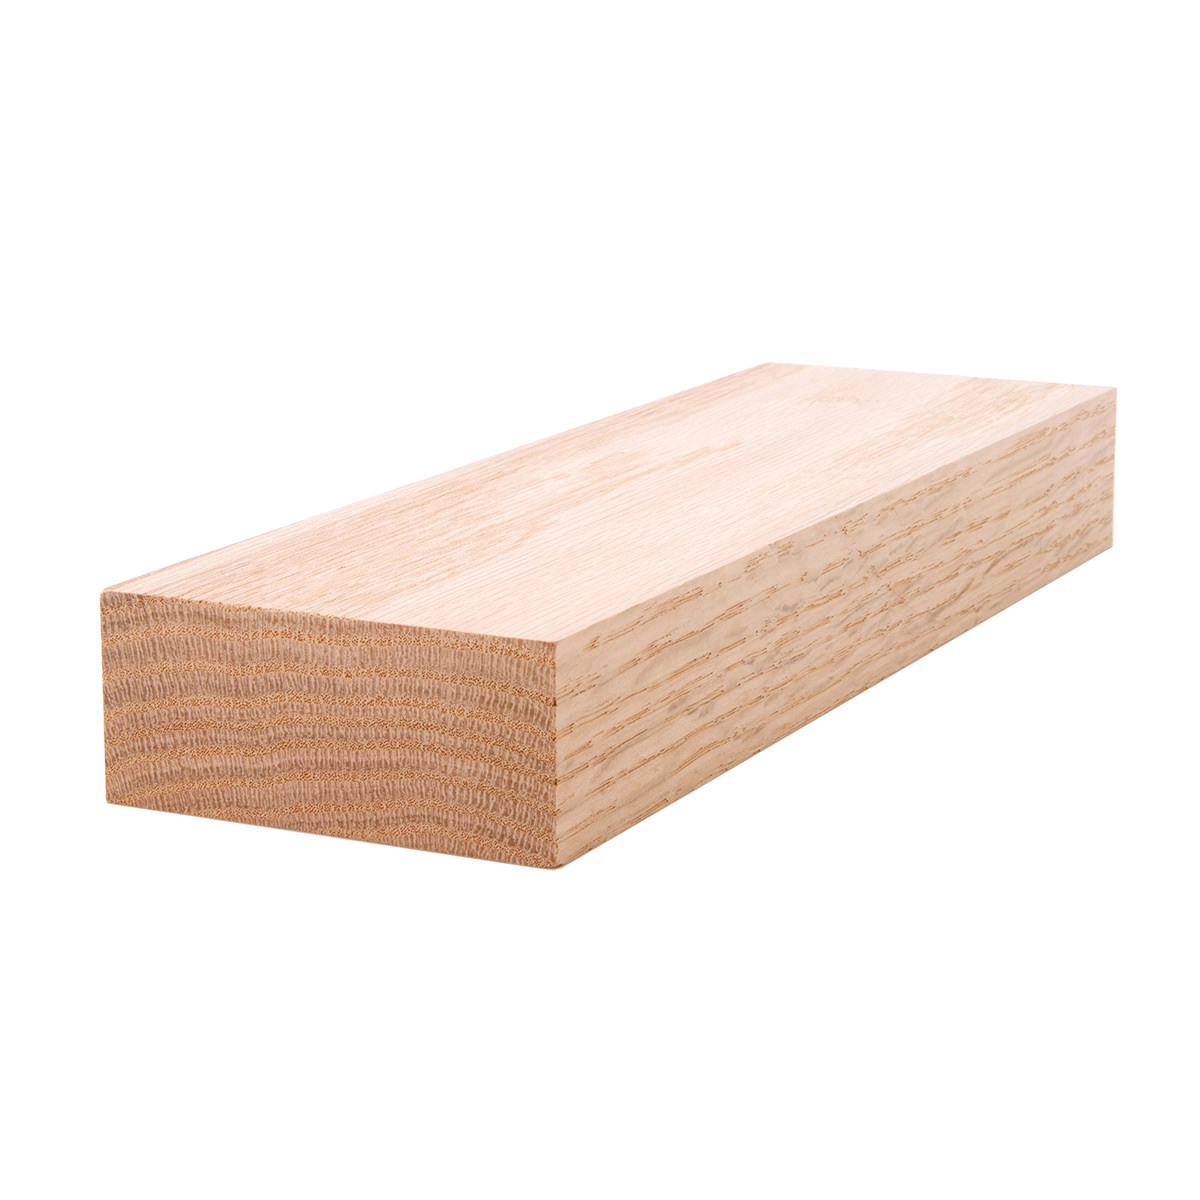 2x4 (11/2" x 31/2") Red Oak S4S Lumber, Boards, & Flat